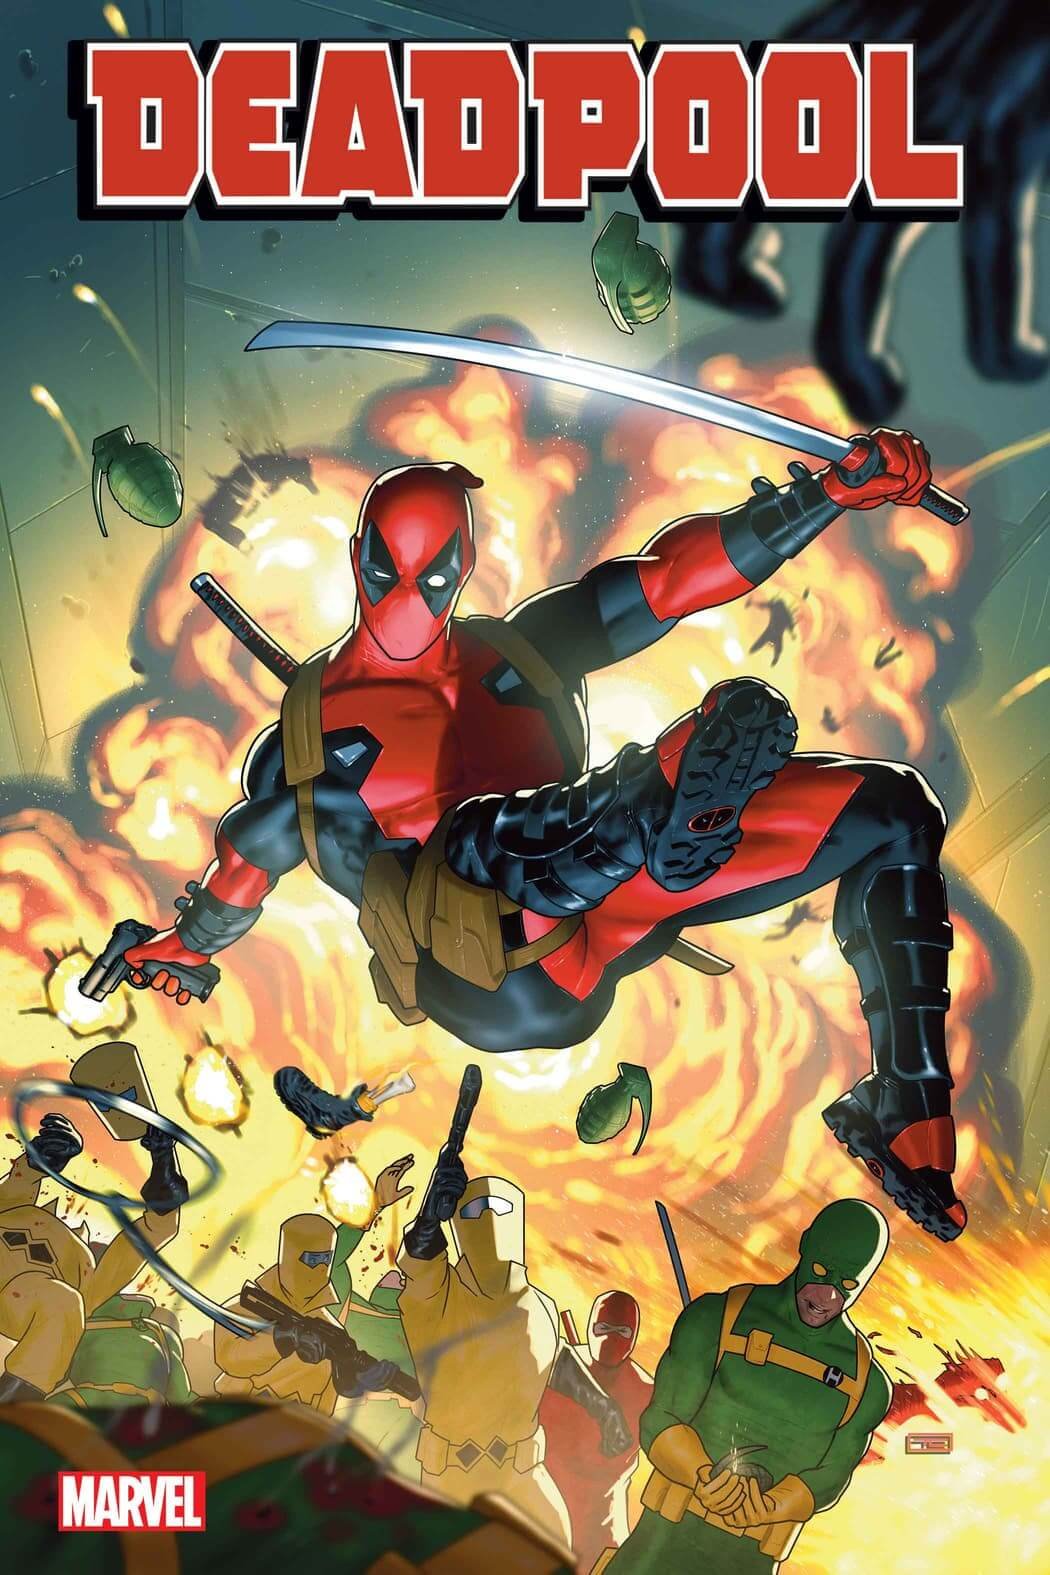 Cover di Deadpool 1 (la nuova serie di Ziglar e Antônio) di Taurin Clark